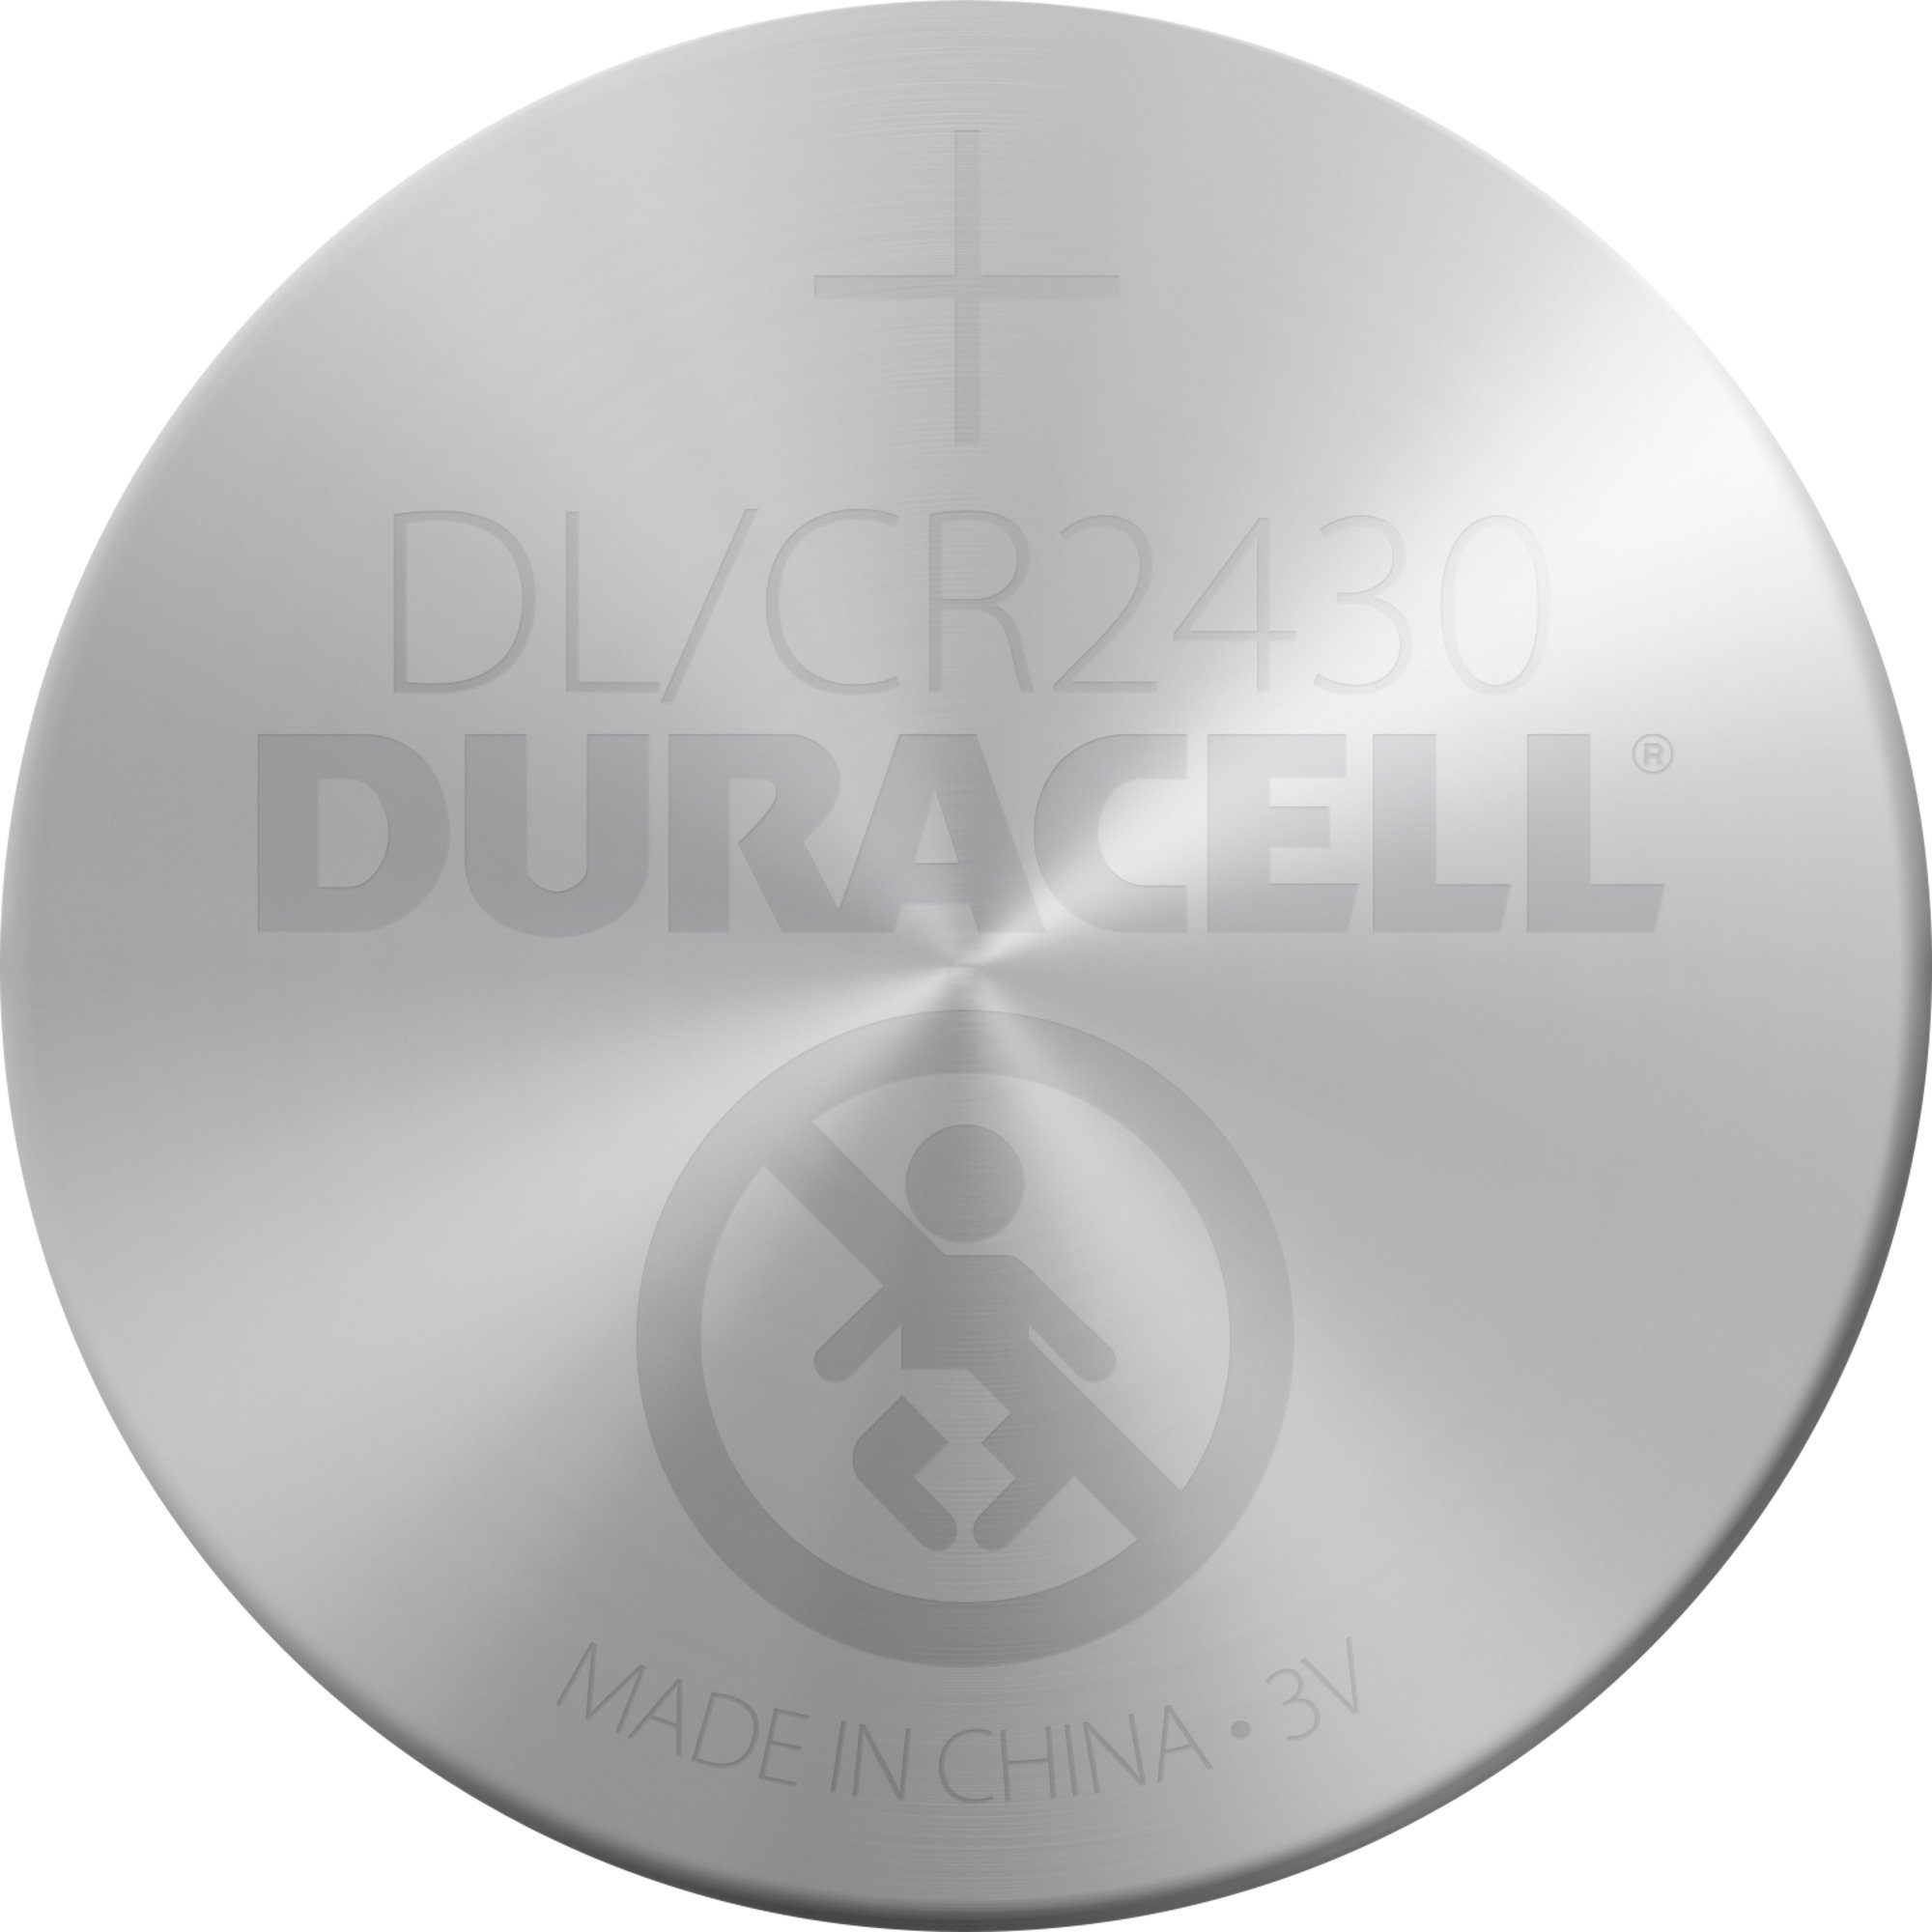 Duracell Duracell CR 2430 Lithium-Knopfzelle Batterie 3V, Batterie